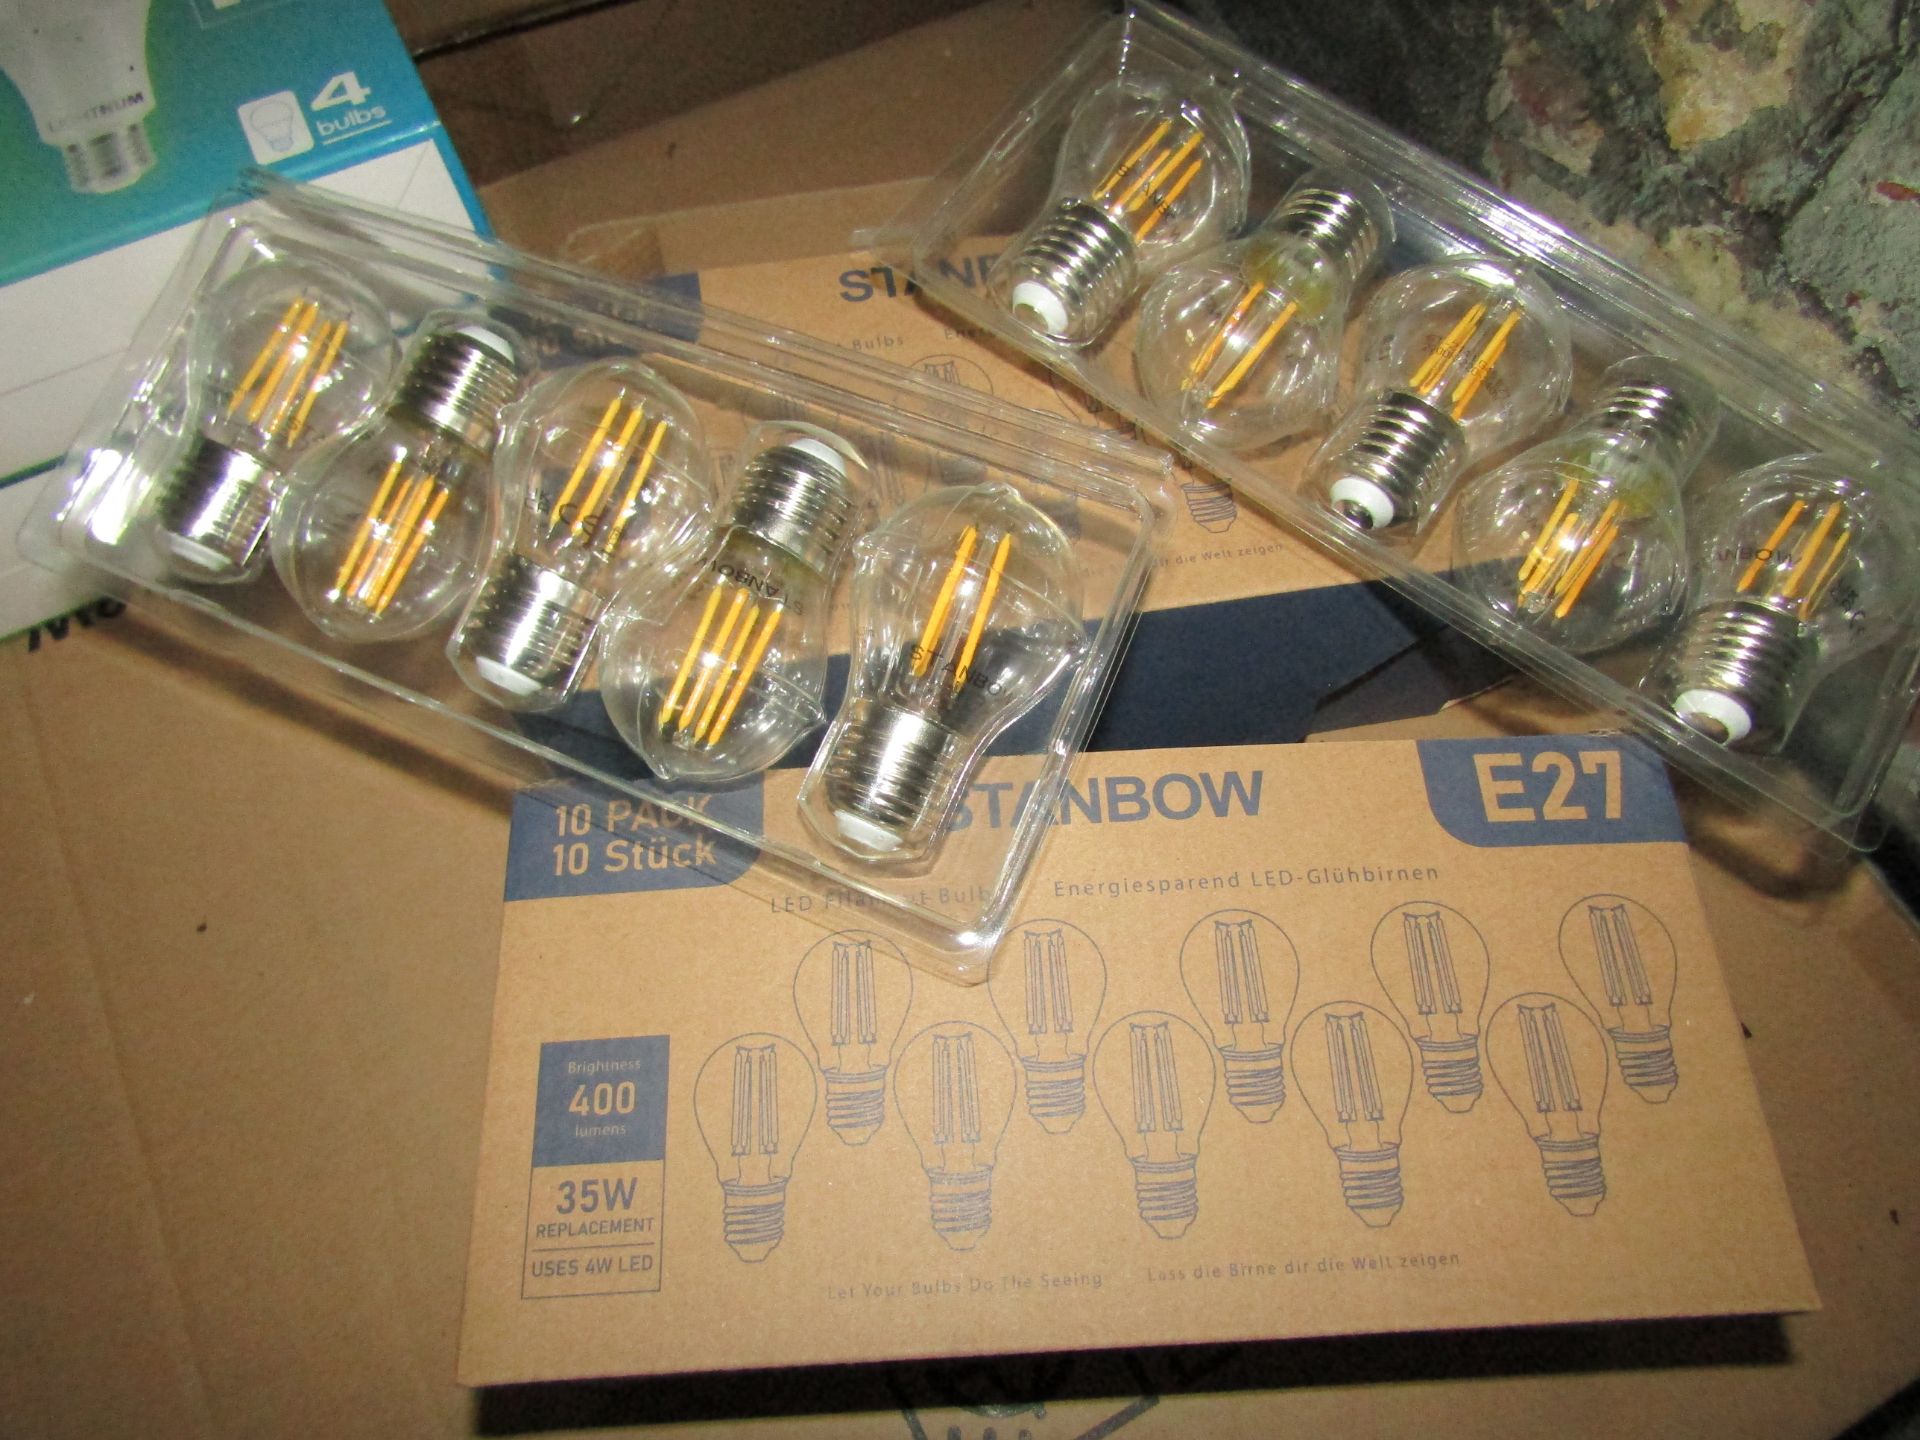 2X AMPTON - G45 E27 400 Lumen LED Filament Light Bulbs - Pack of 6 - New & Boxed.